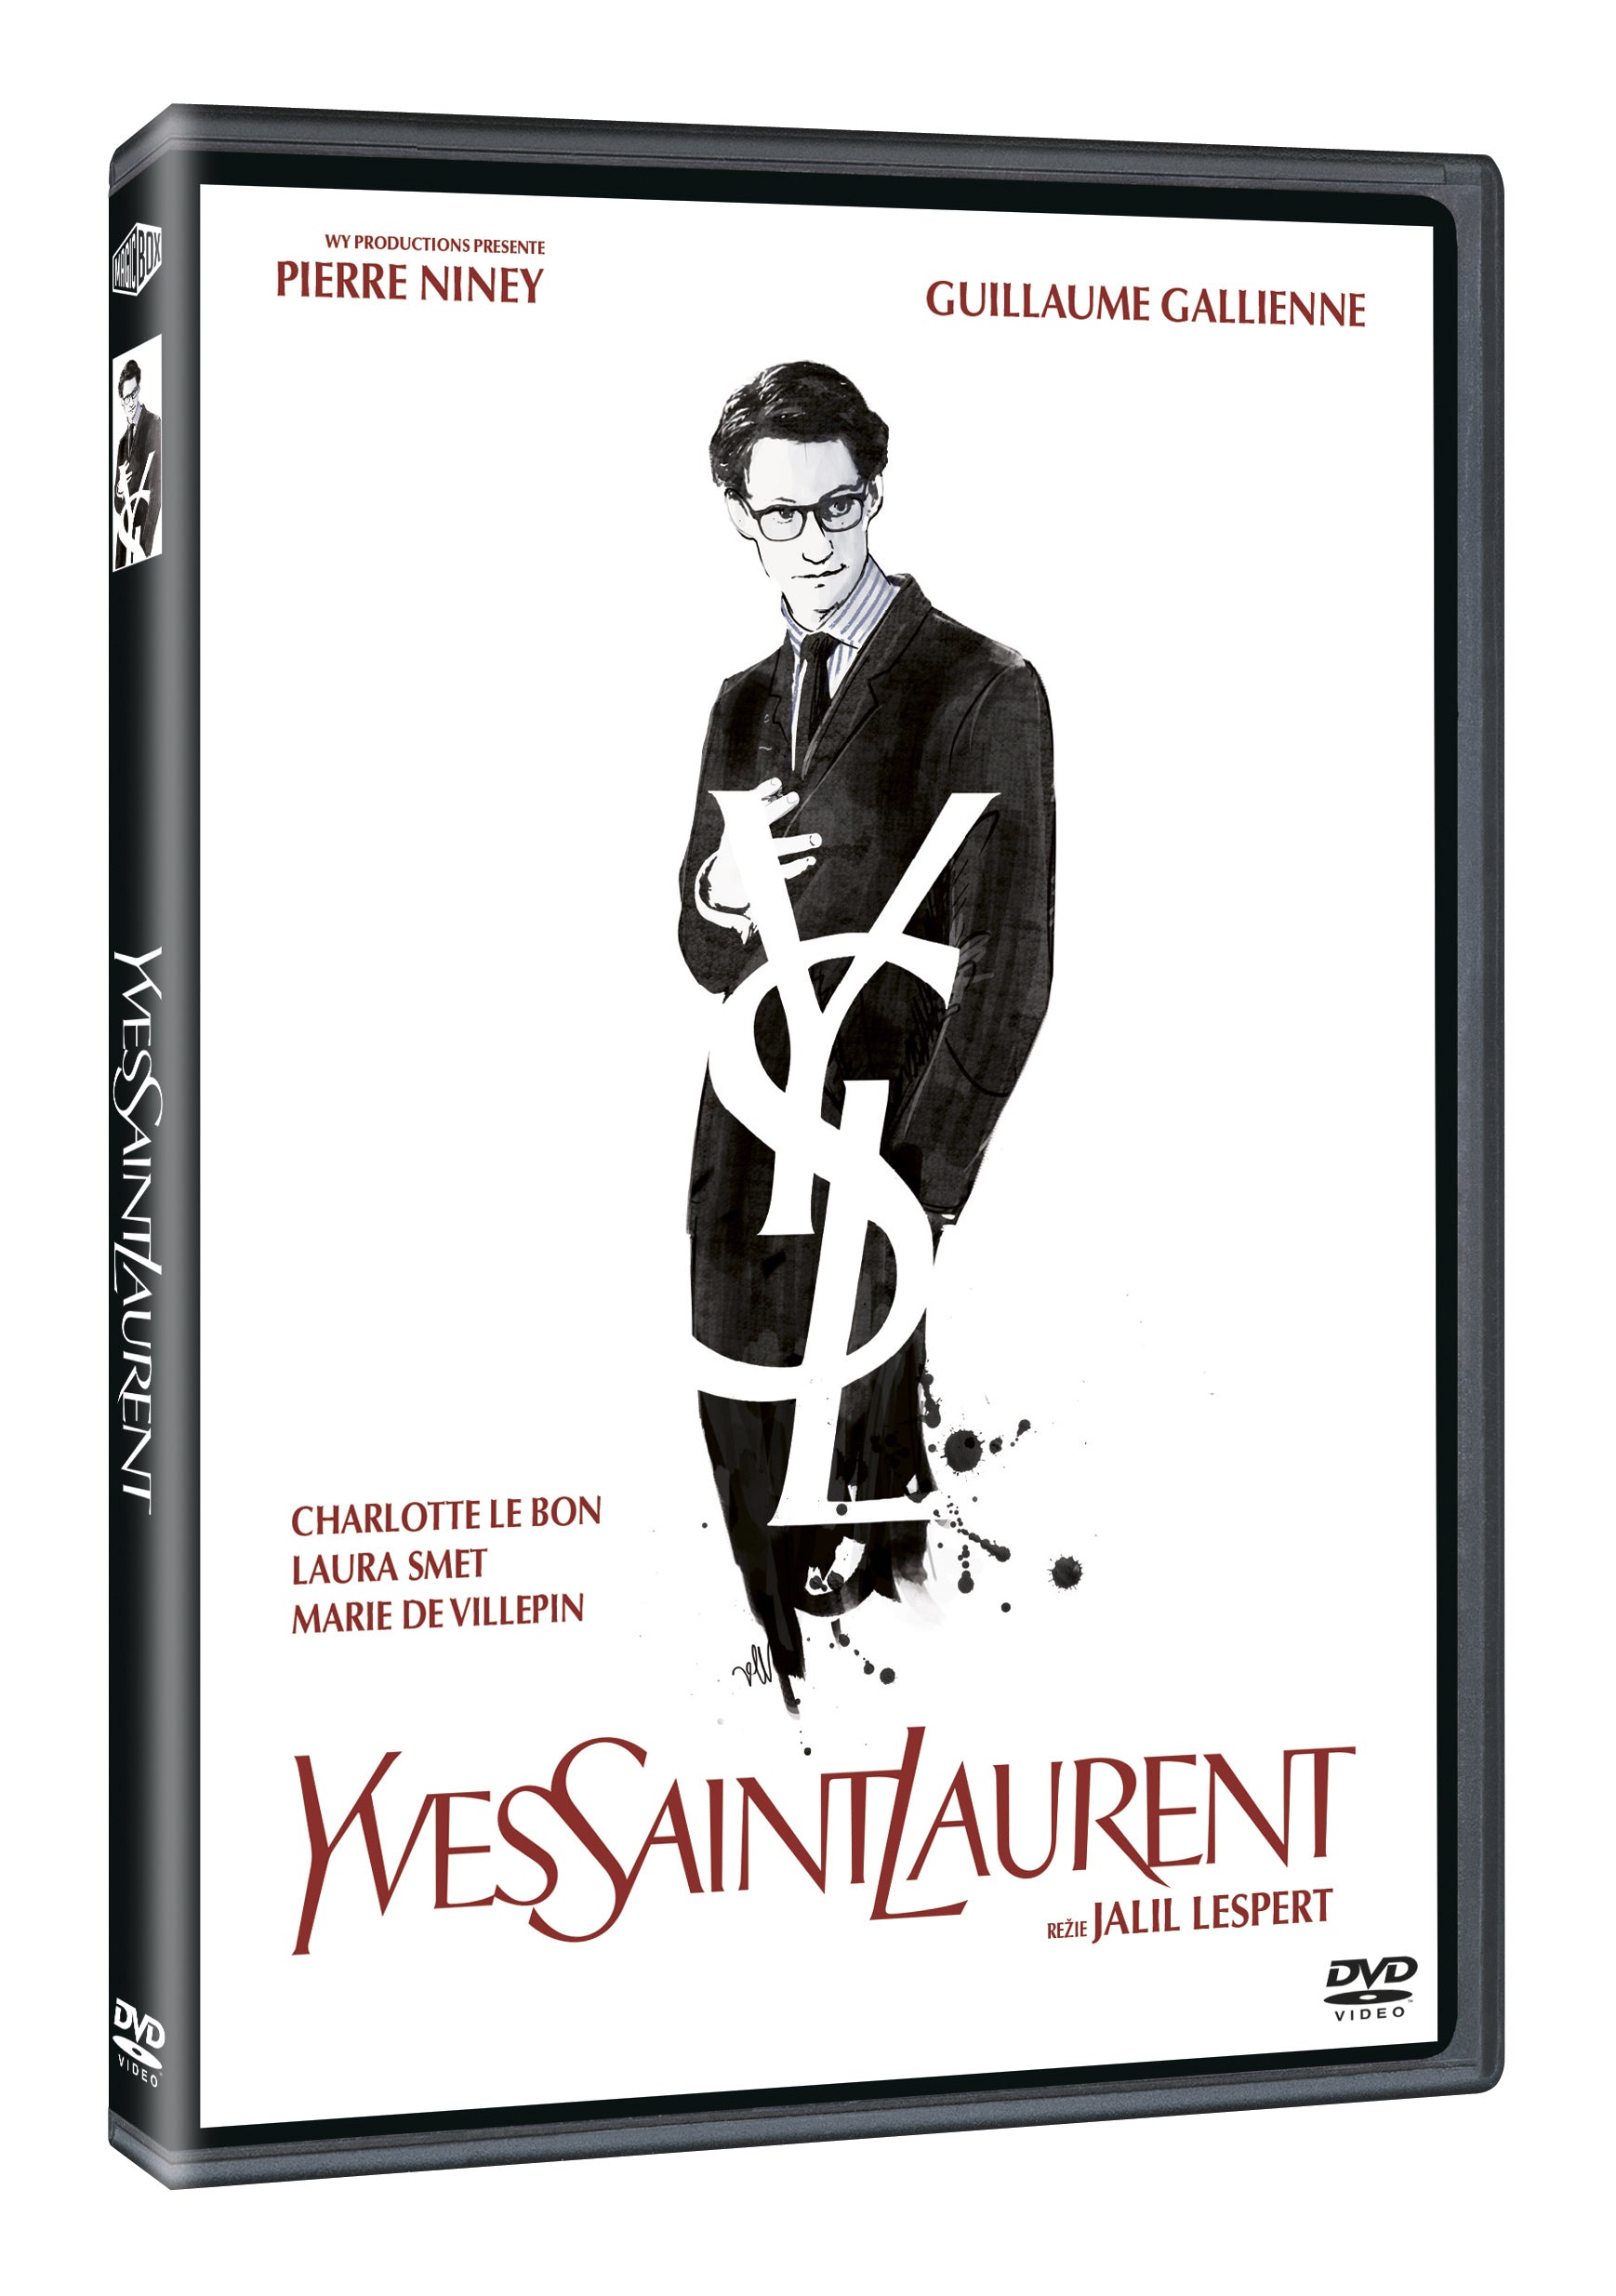 Yves Saint Laurent DVD / Yves Saint Laurent